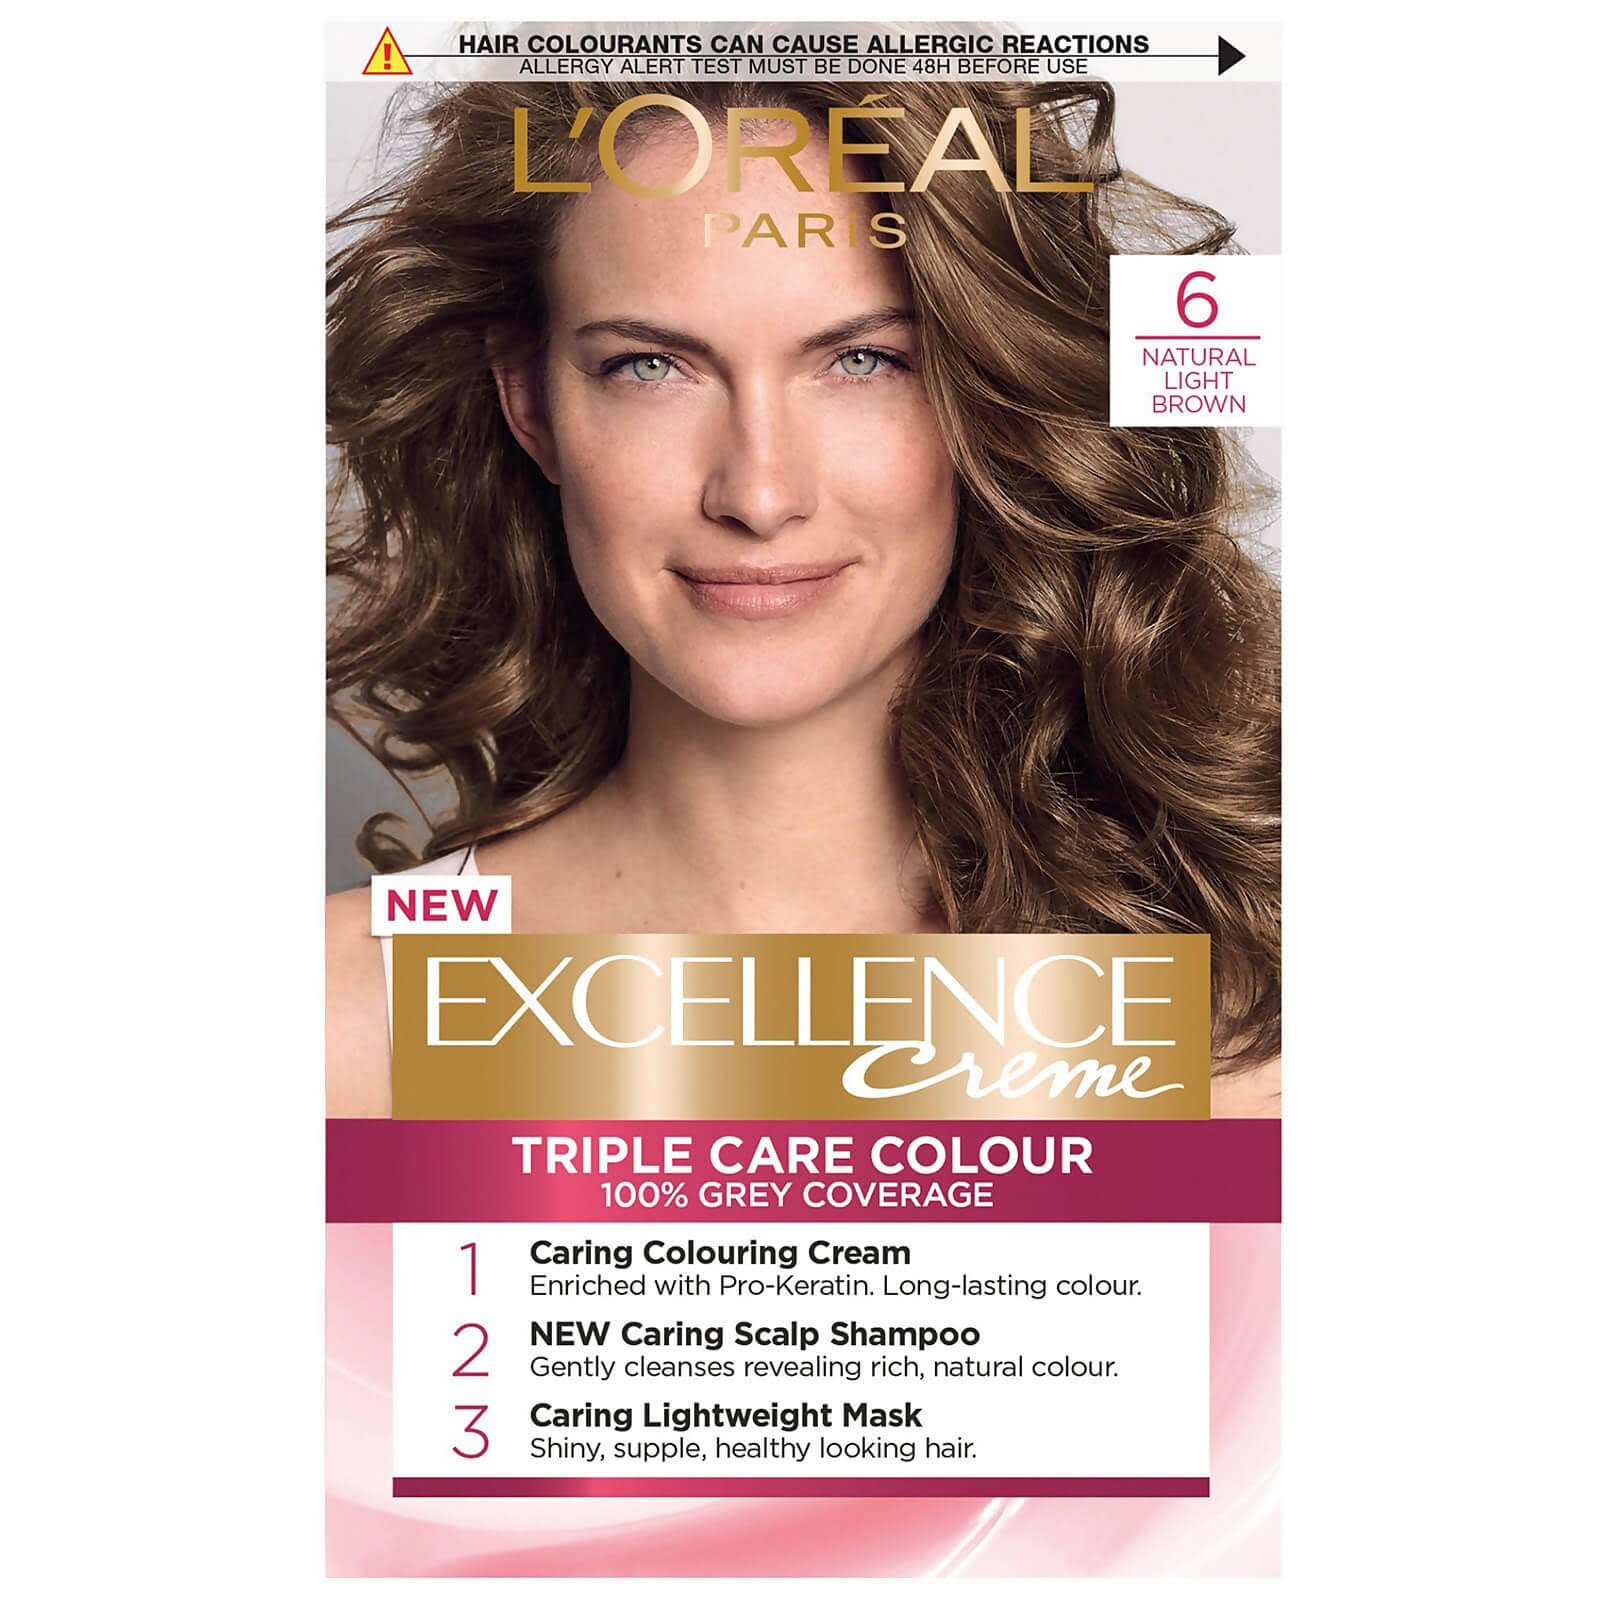 L'Oréal Paris Excellence Crème Permanent Hair Dye (Various Shades) - 6 Natural Light Brown